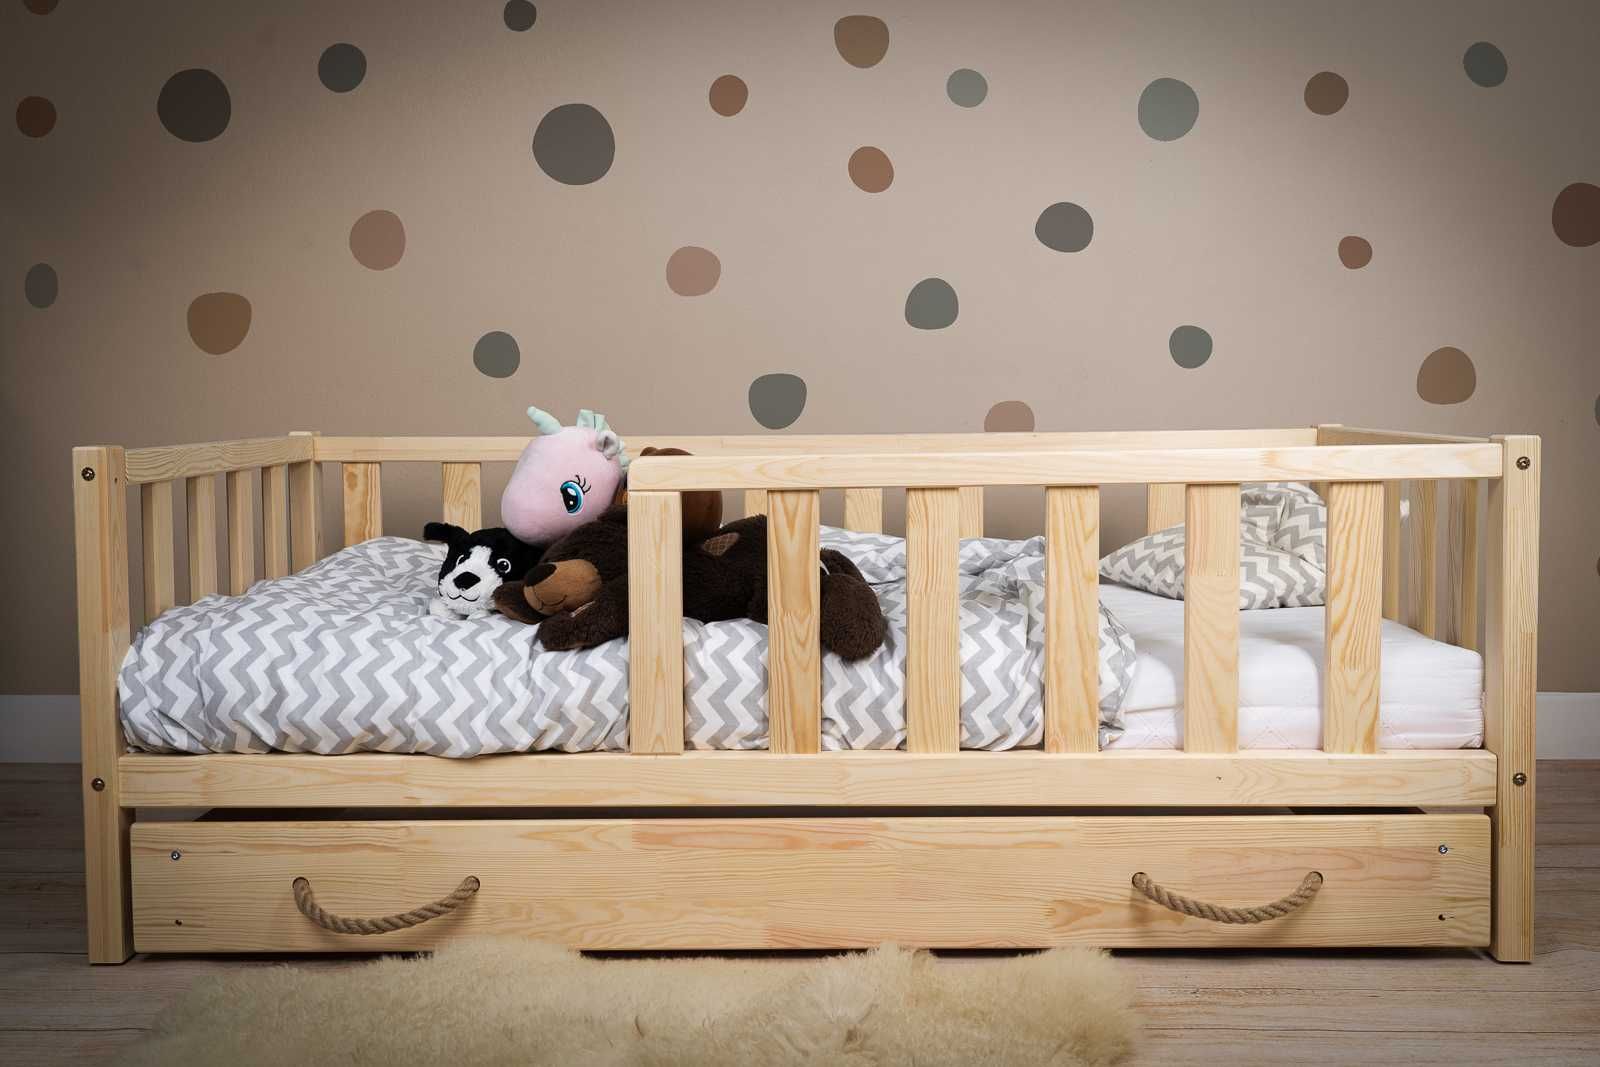 Łóżko domek dla dziecka, łóżko dziecięce domek - producent Kidbeds.pl